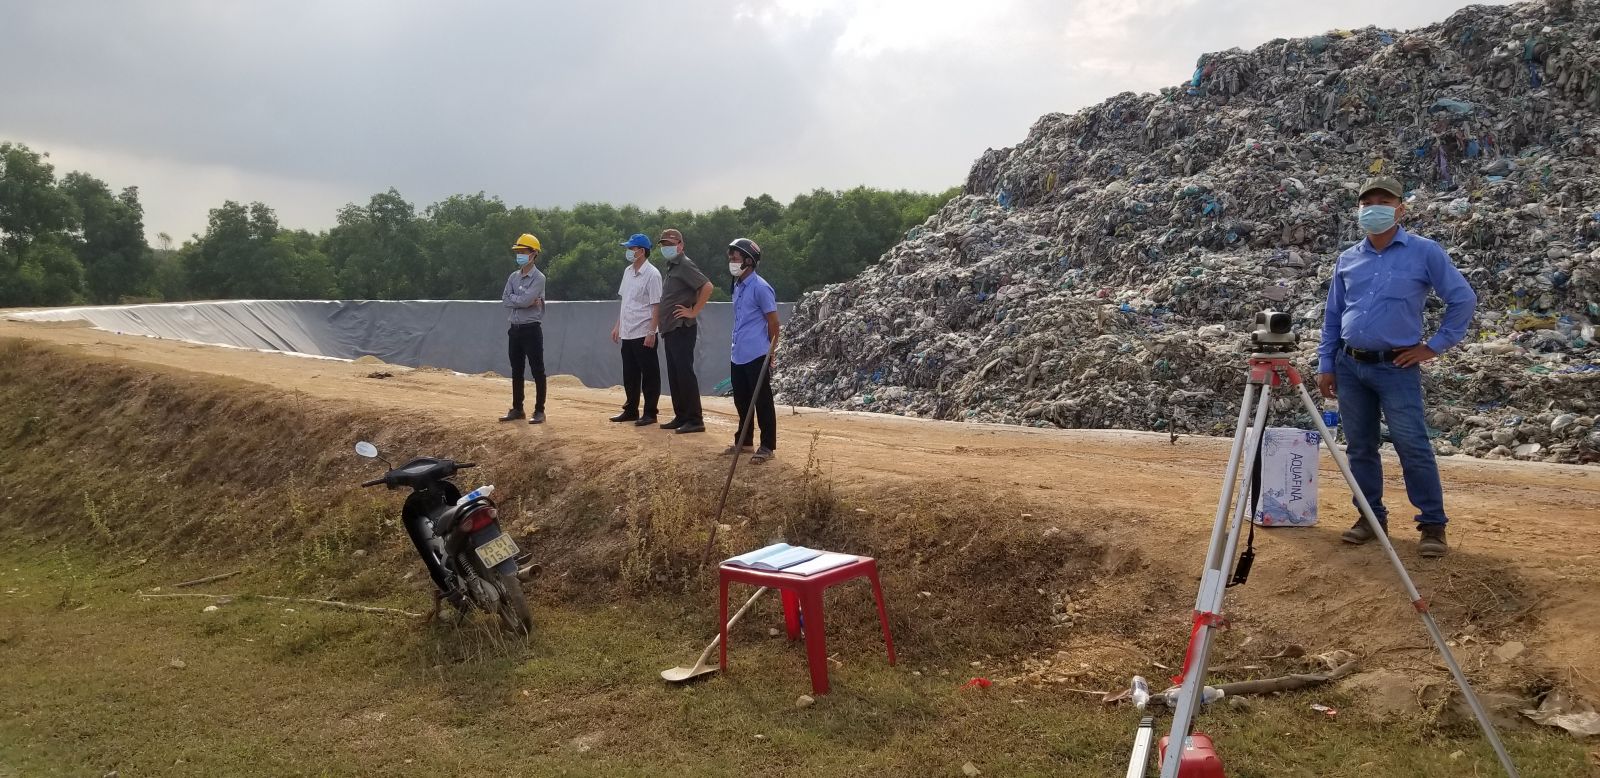 Khởi công công trình "Mở rộng, cải tạo bãi chôn lấp rác Thủy Phương" (Tin bài: Báo Thừa Thiên Huế)